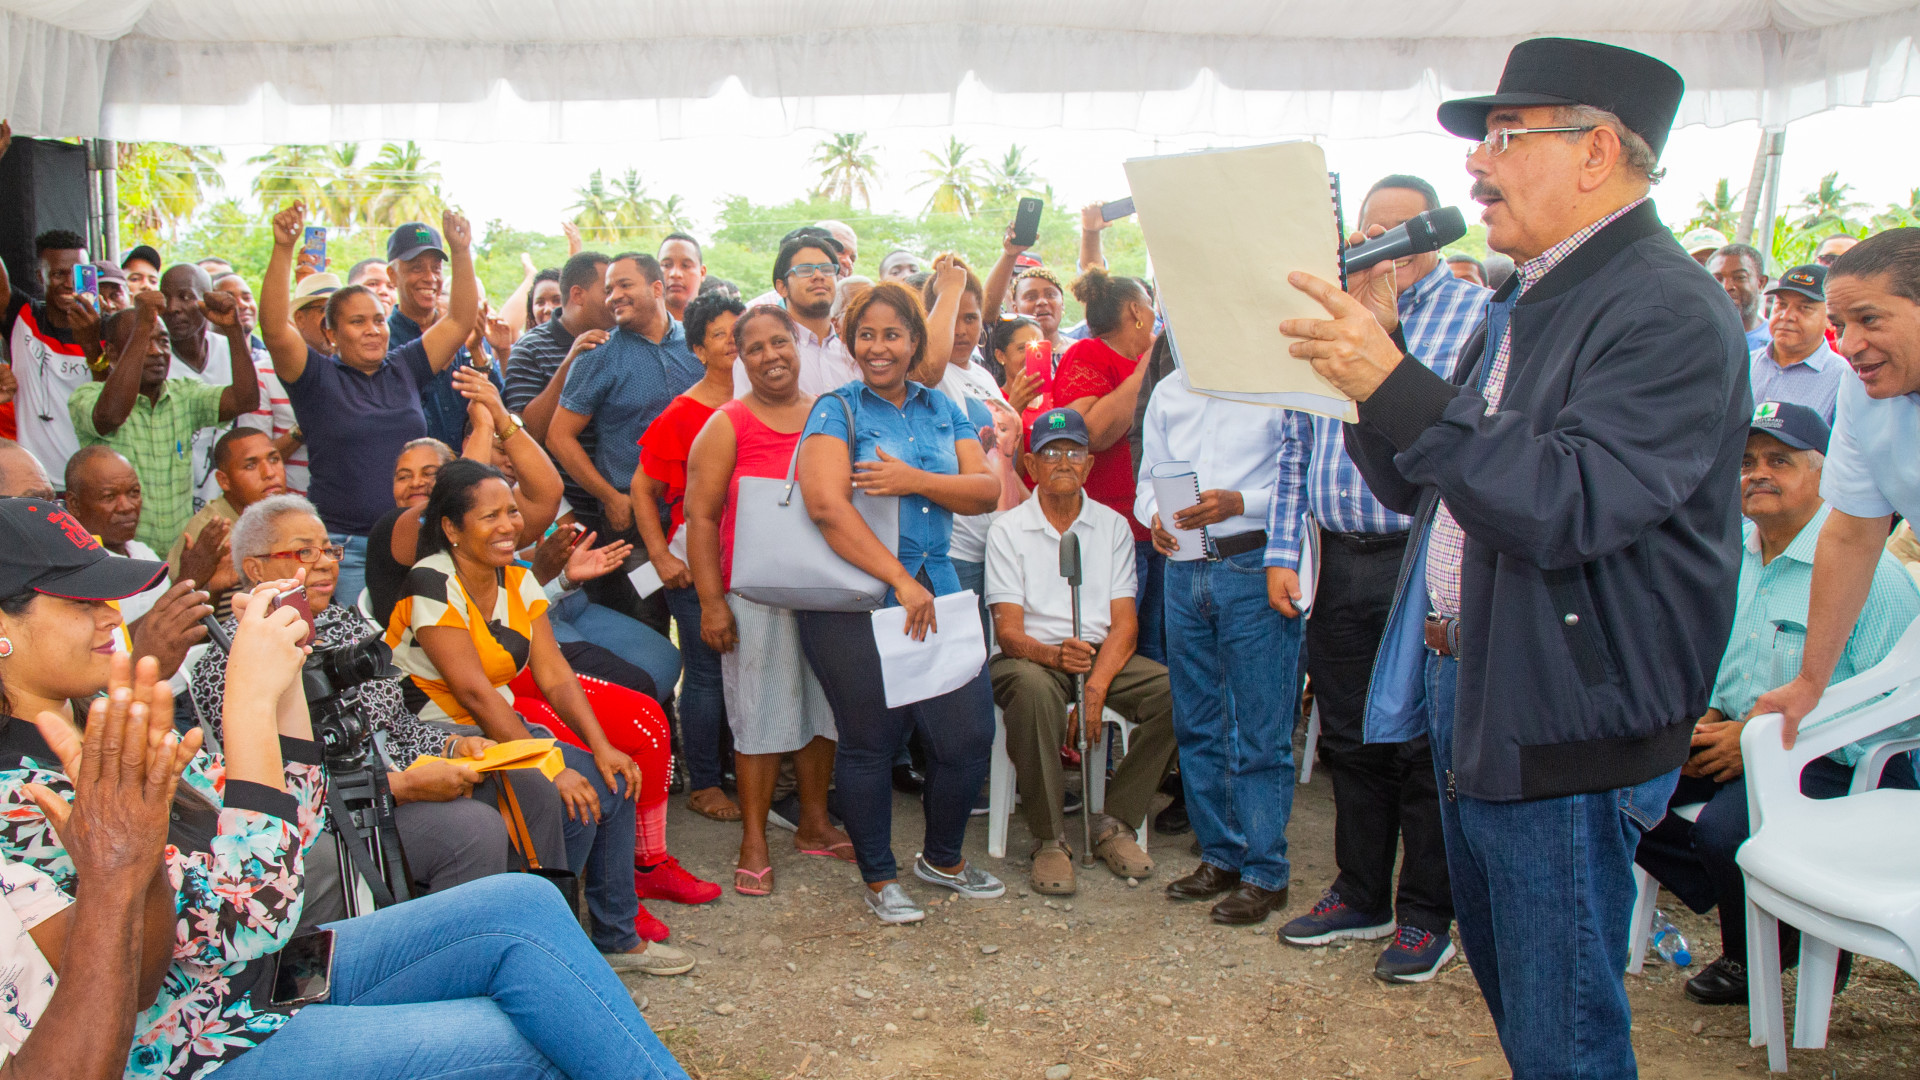 REPÚBLICA DOMINICANA: Canoa, Barahona: Danilo dispone crédito, títulación y donación centro de acopio y furgoneta en favor productores de coco y jóvenes